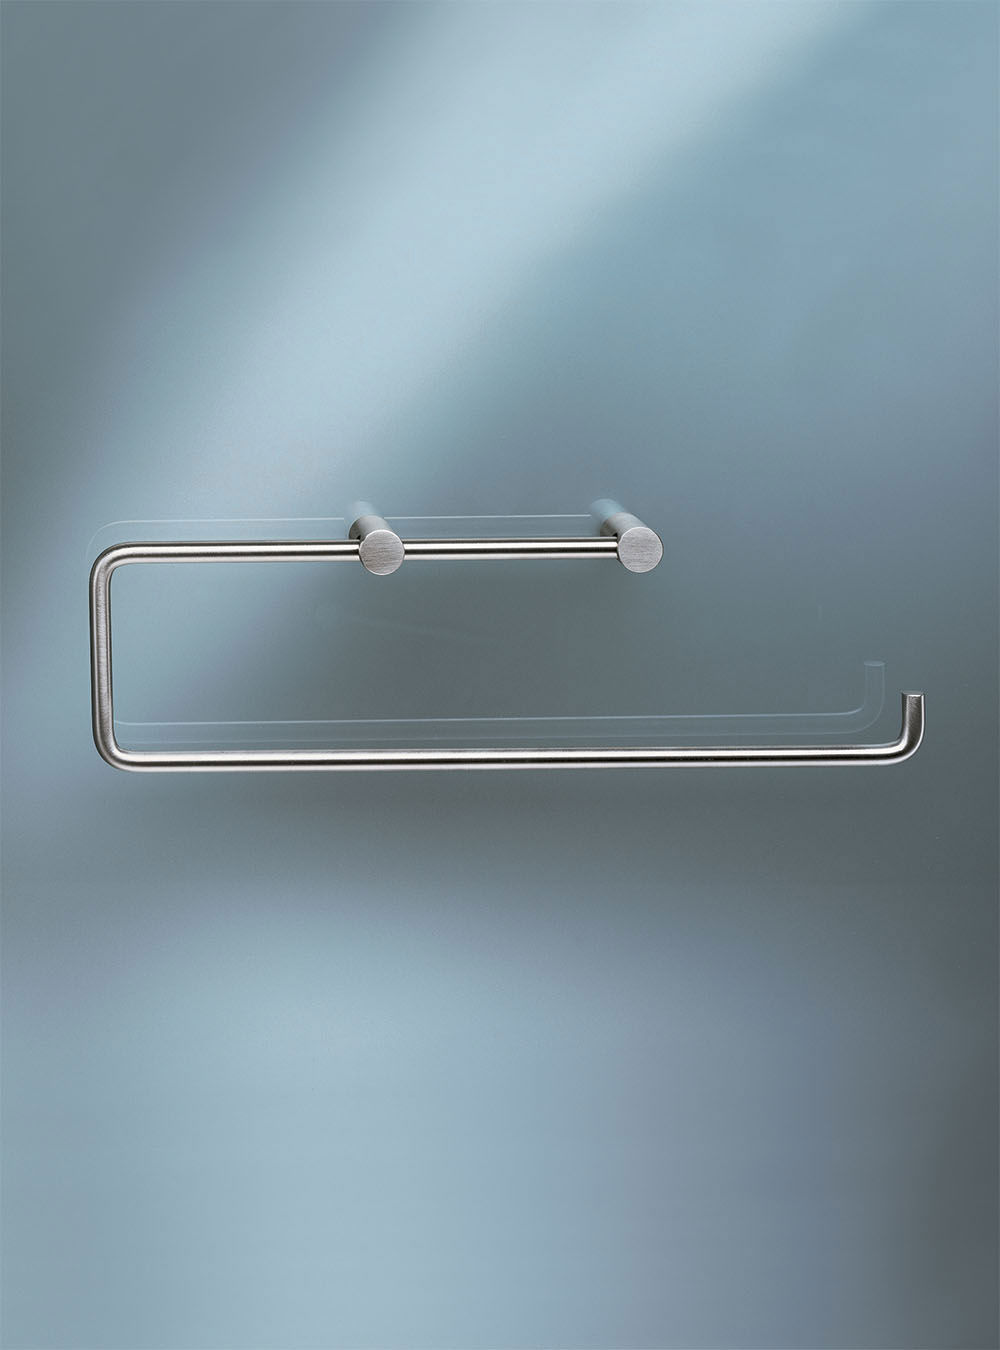 T13-BP: Papierhalter für zwei WC-Rollen oder eine Papierhandtuchrolle (Küchenrolle), Bügellänge 237 mm. Ohne